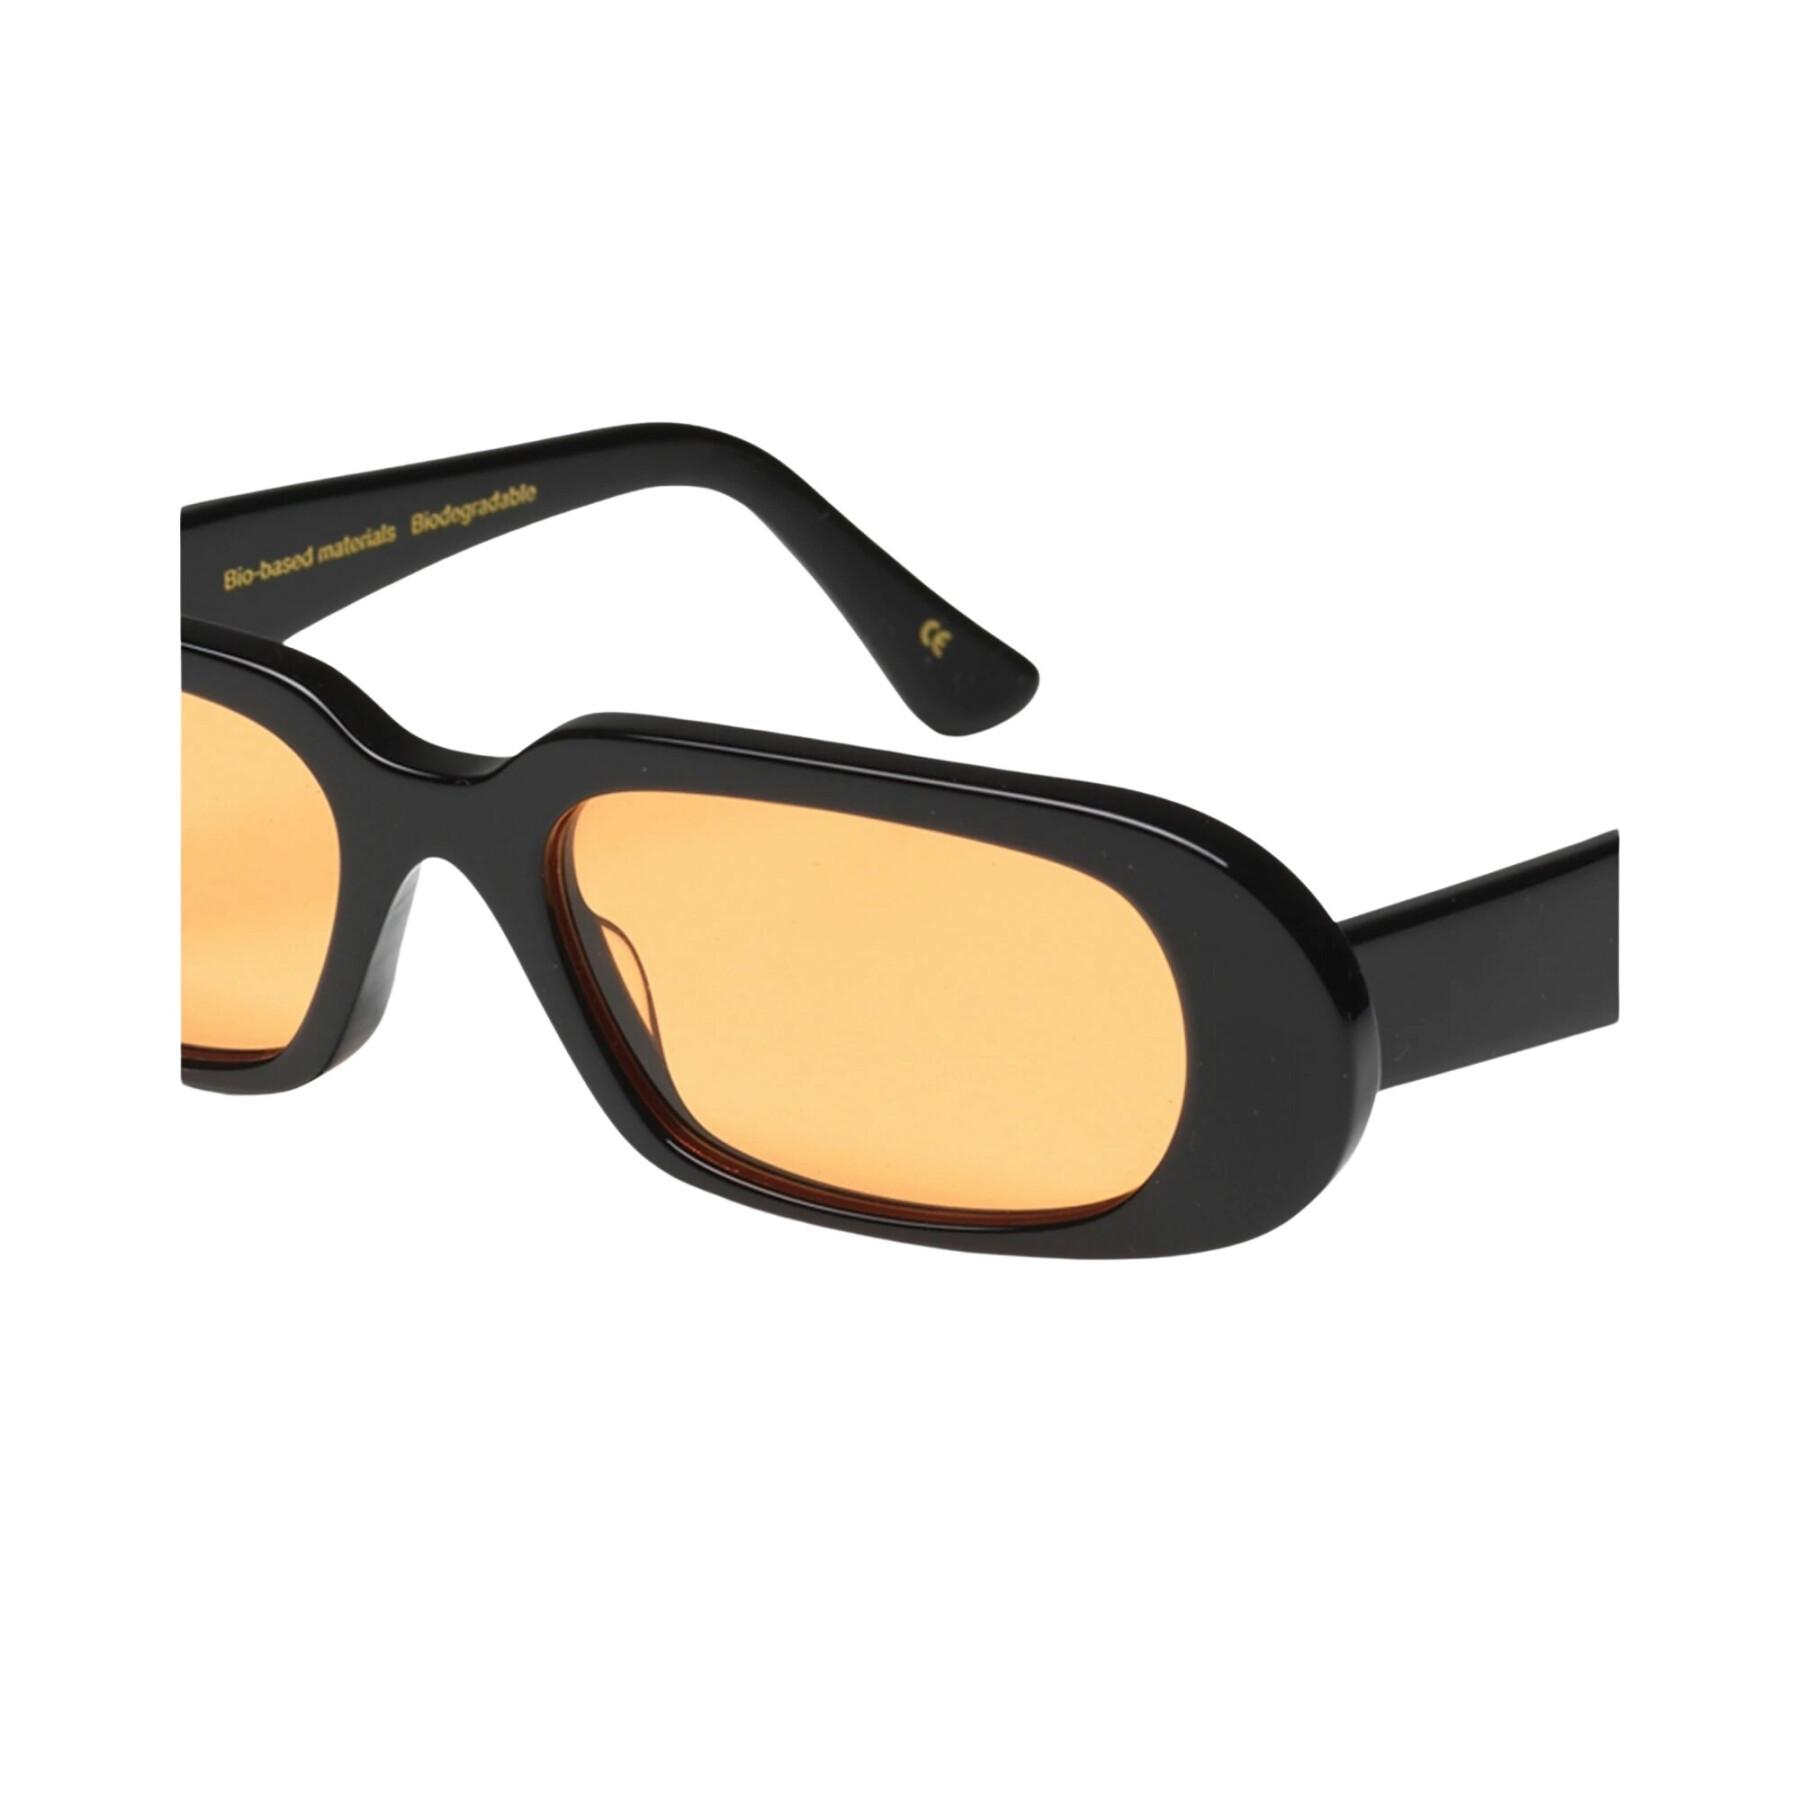 Óculos escuros Colorful Standard 09 deep black solid/orange